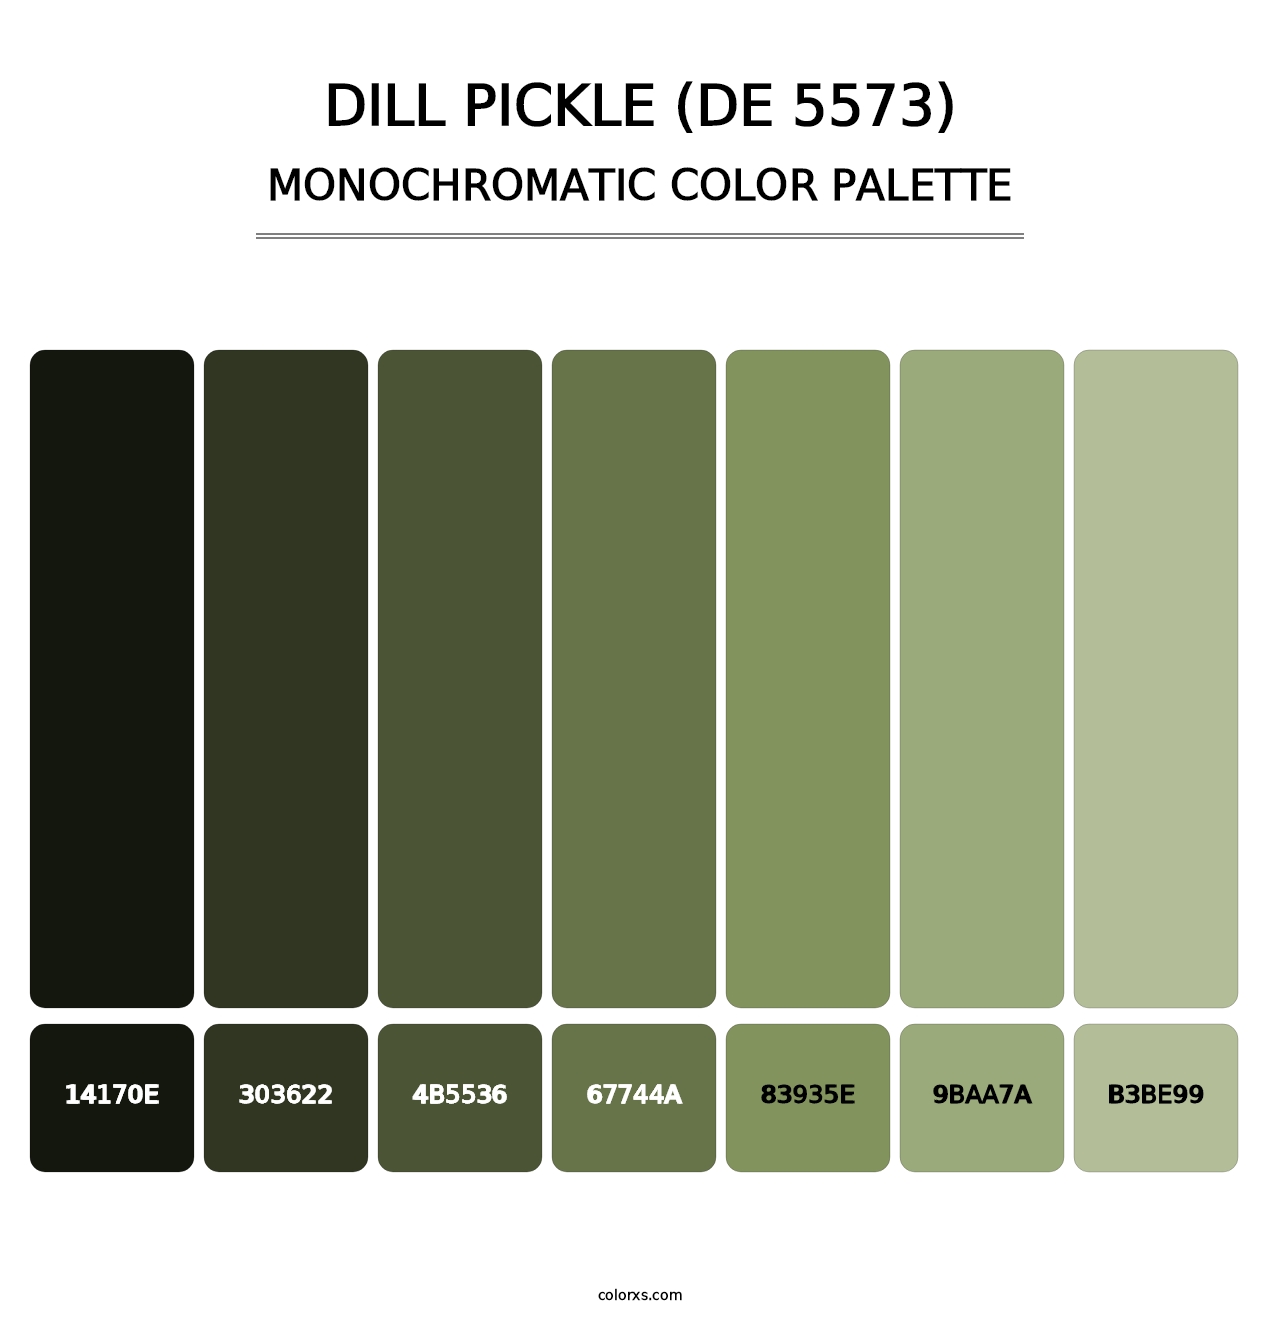 Dill Pickle (DE 5573) - Monochromatic Color Palette